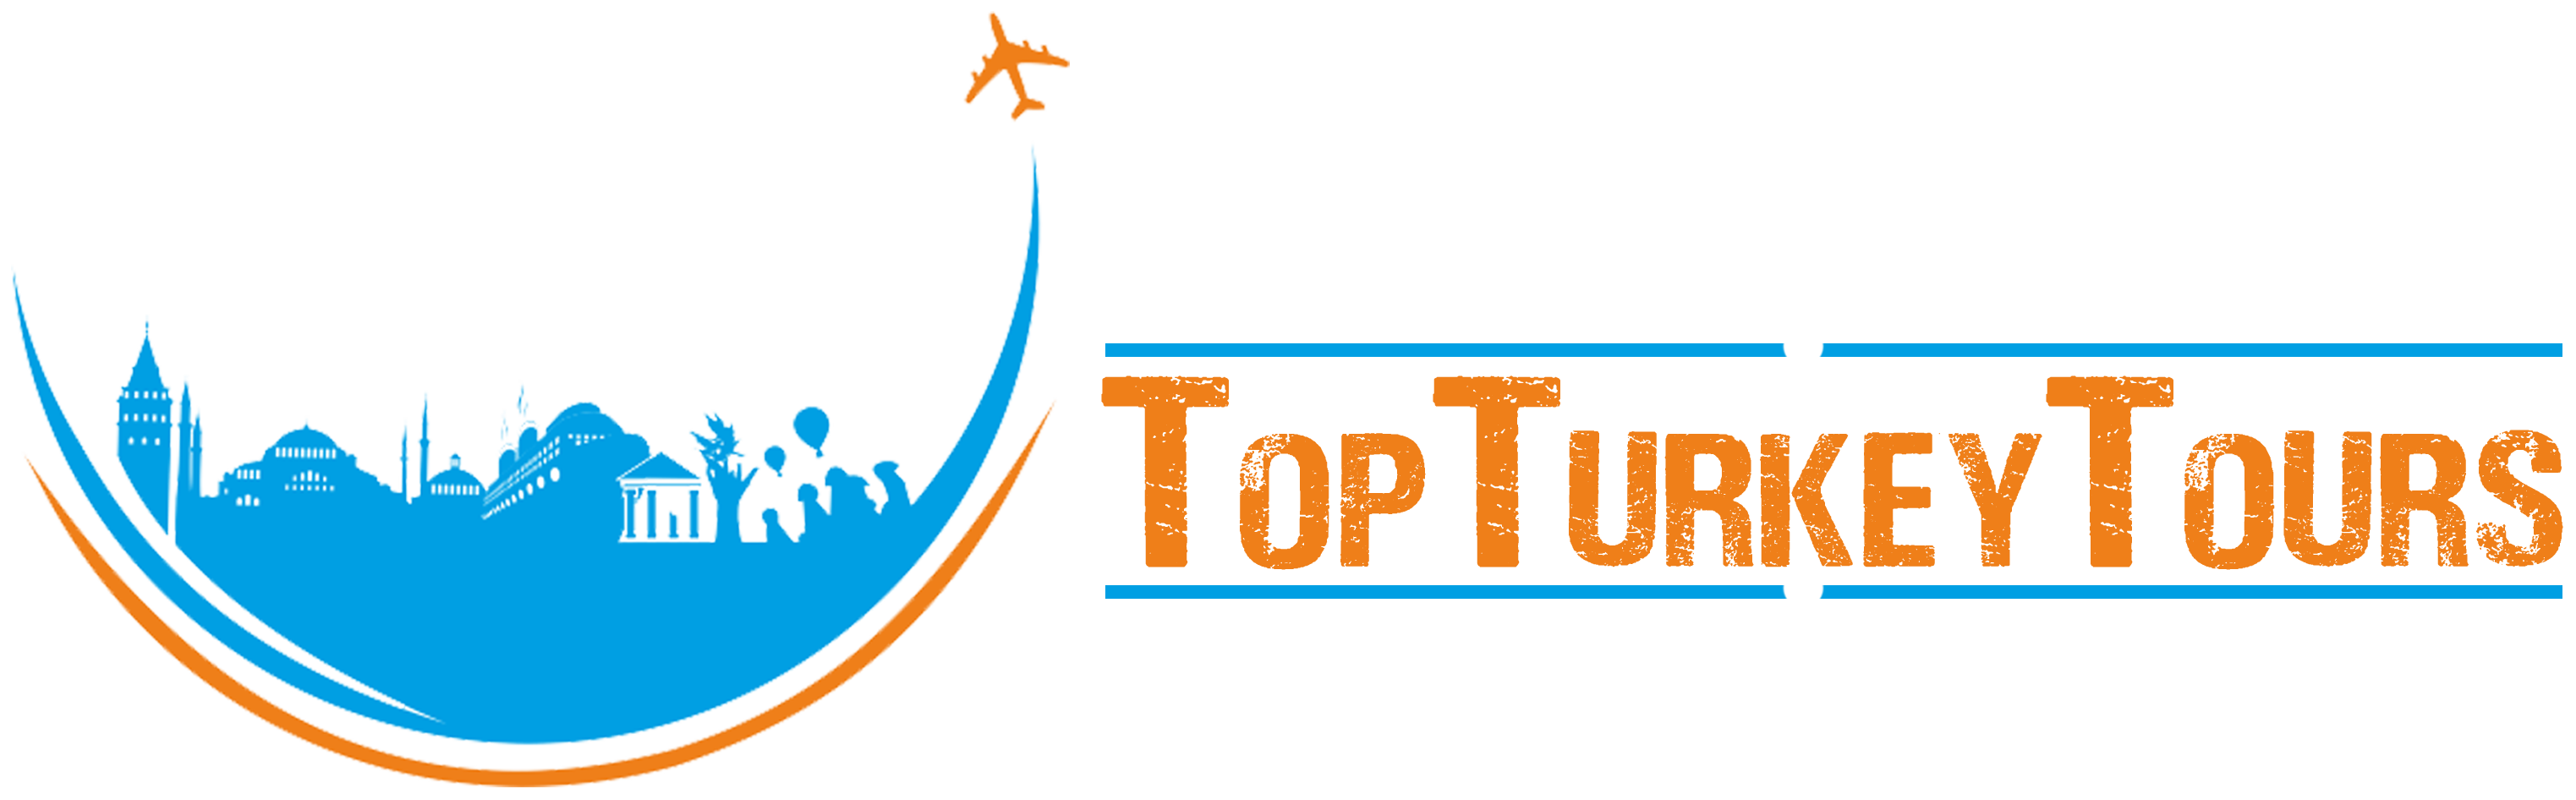 Top Turkey Tours